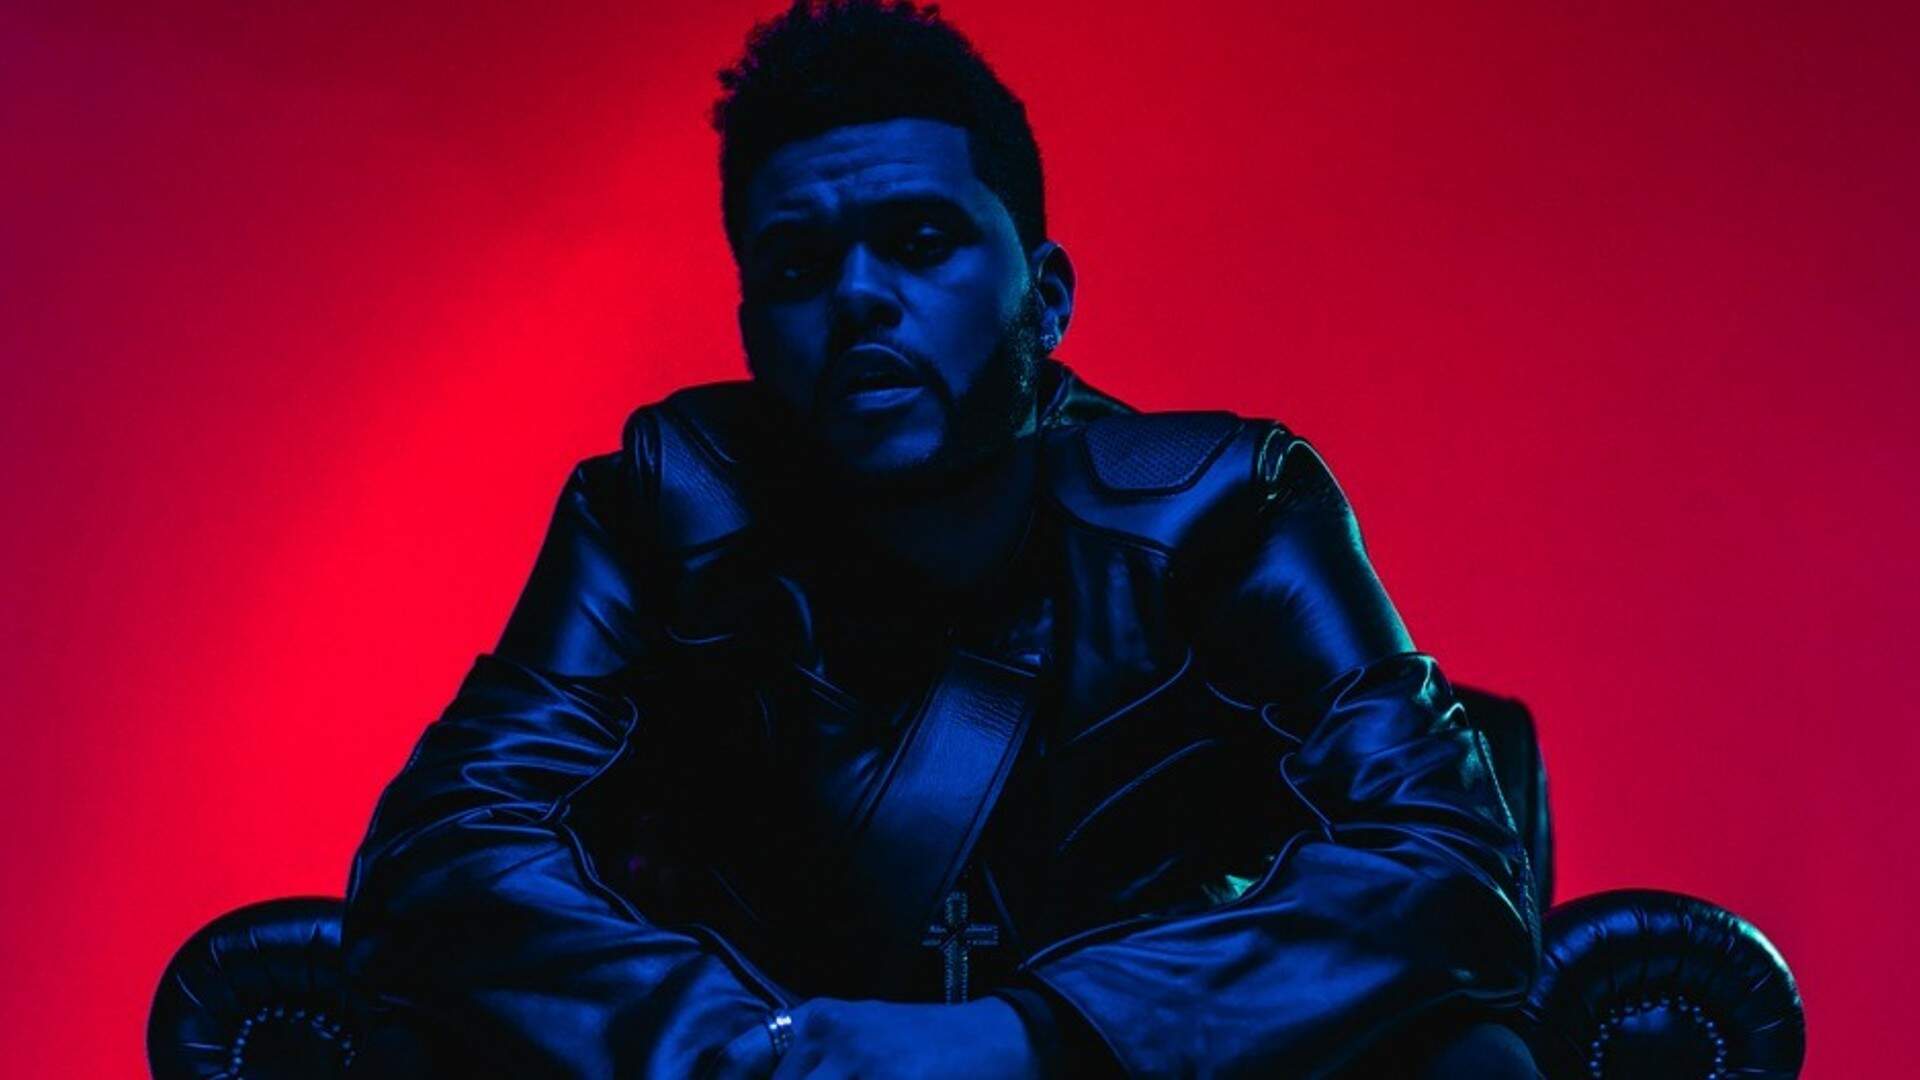 Impulsionado pela parceria com Ariana Grande, The Weeknd relança álbum de sucesso com faixas extras - Metropolitana FM